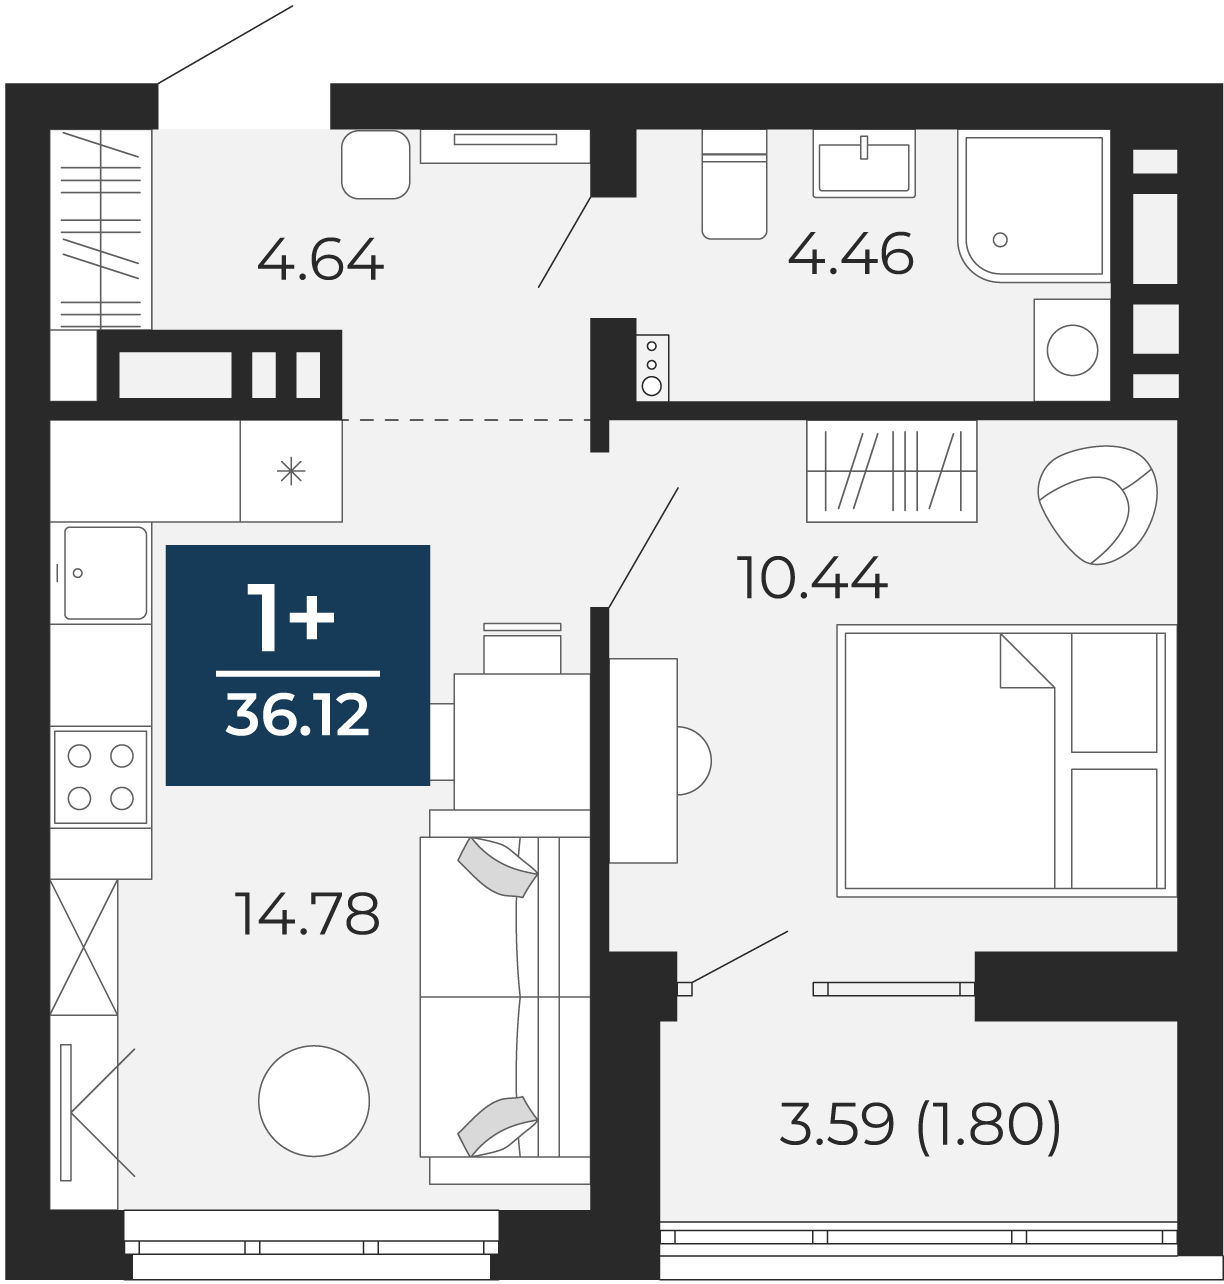 Квартира № 259, 1-комнатная, 36.12 кв. м, 16 этаж